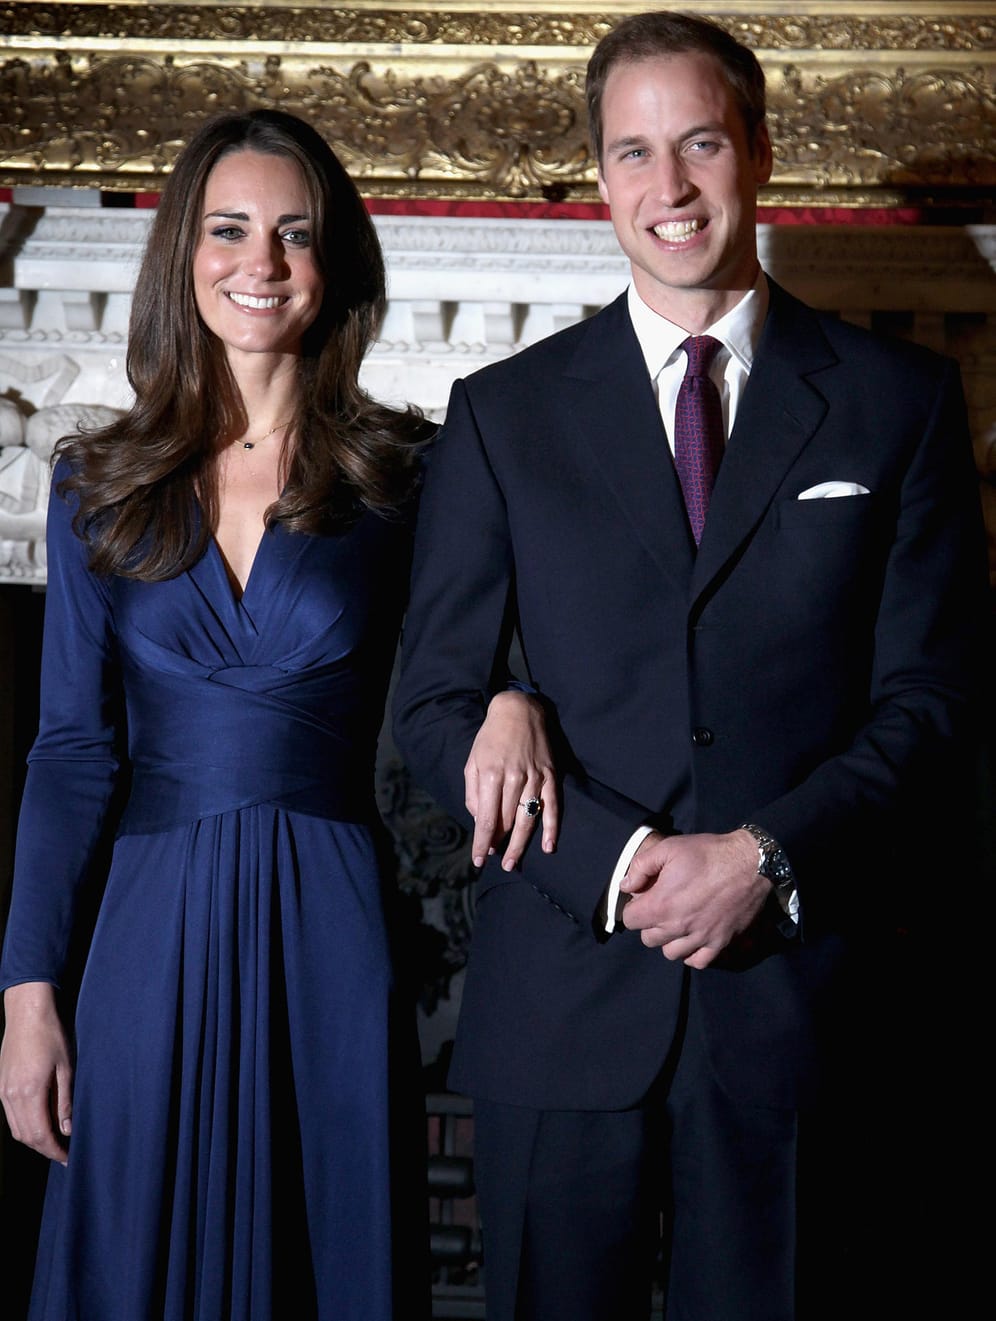 November 2010: Kate und William strahlen um die Wette, als sie ihre Verlobung verkünden. Im Oktober hat Kate bei einem Urlaub in Kenia Ja zu ihrer großen Liebe gesagt.